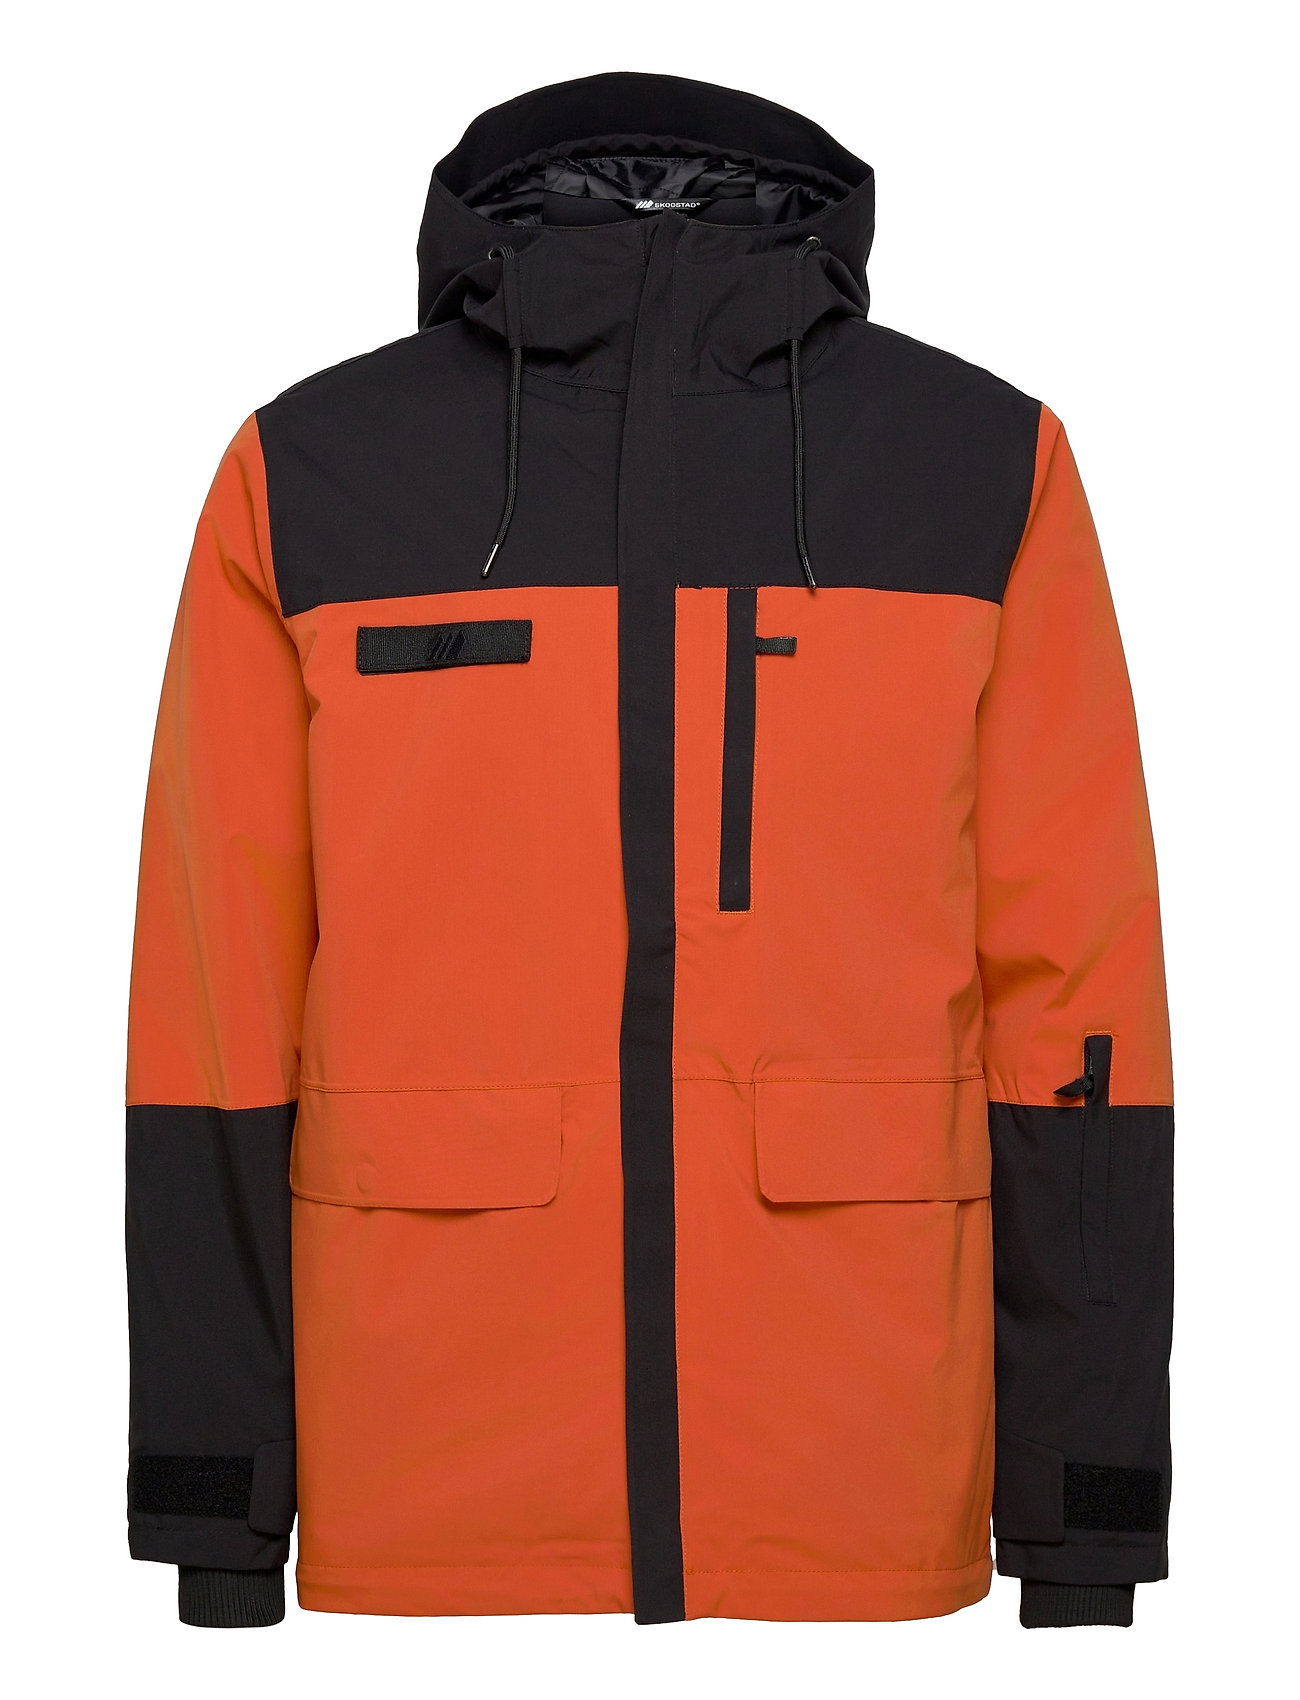 Nykksdalen 2-Layer Technical Jacket Outerwear Sport Jackets Orange Skogstad